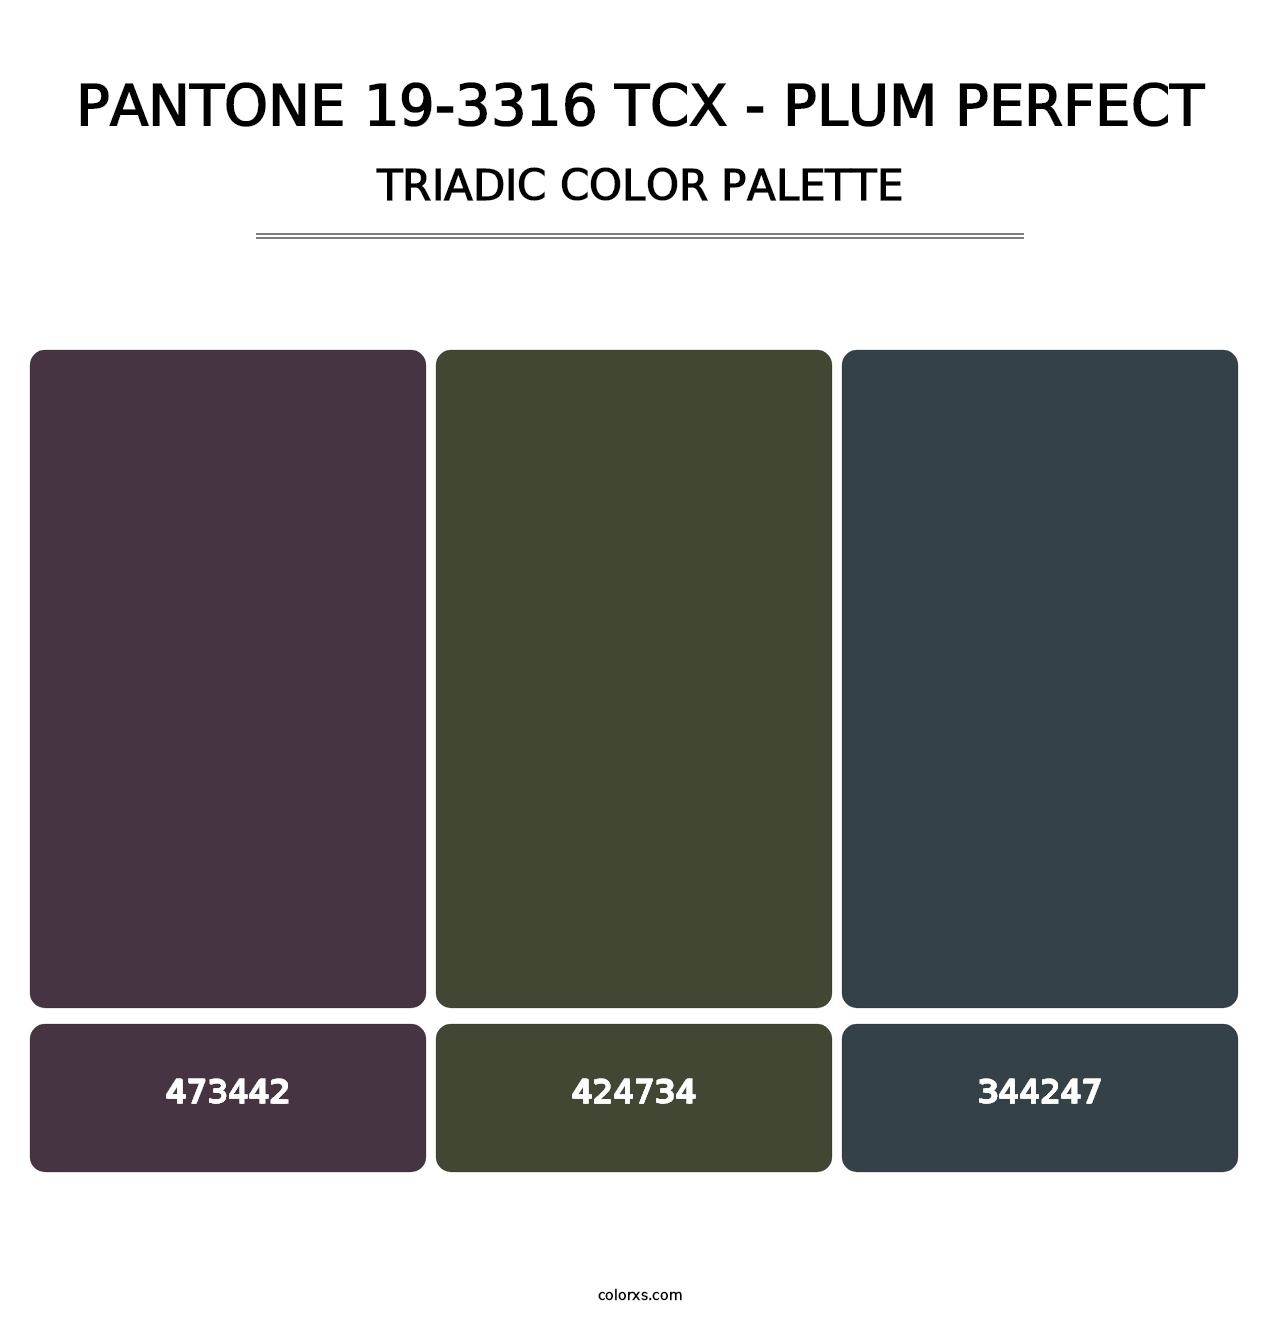 PANTONE 19-3316 TCX - Plum Perfect - Triadic Color Palette